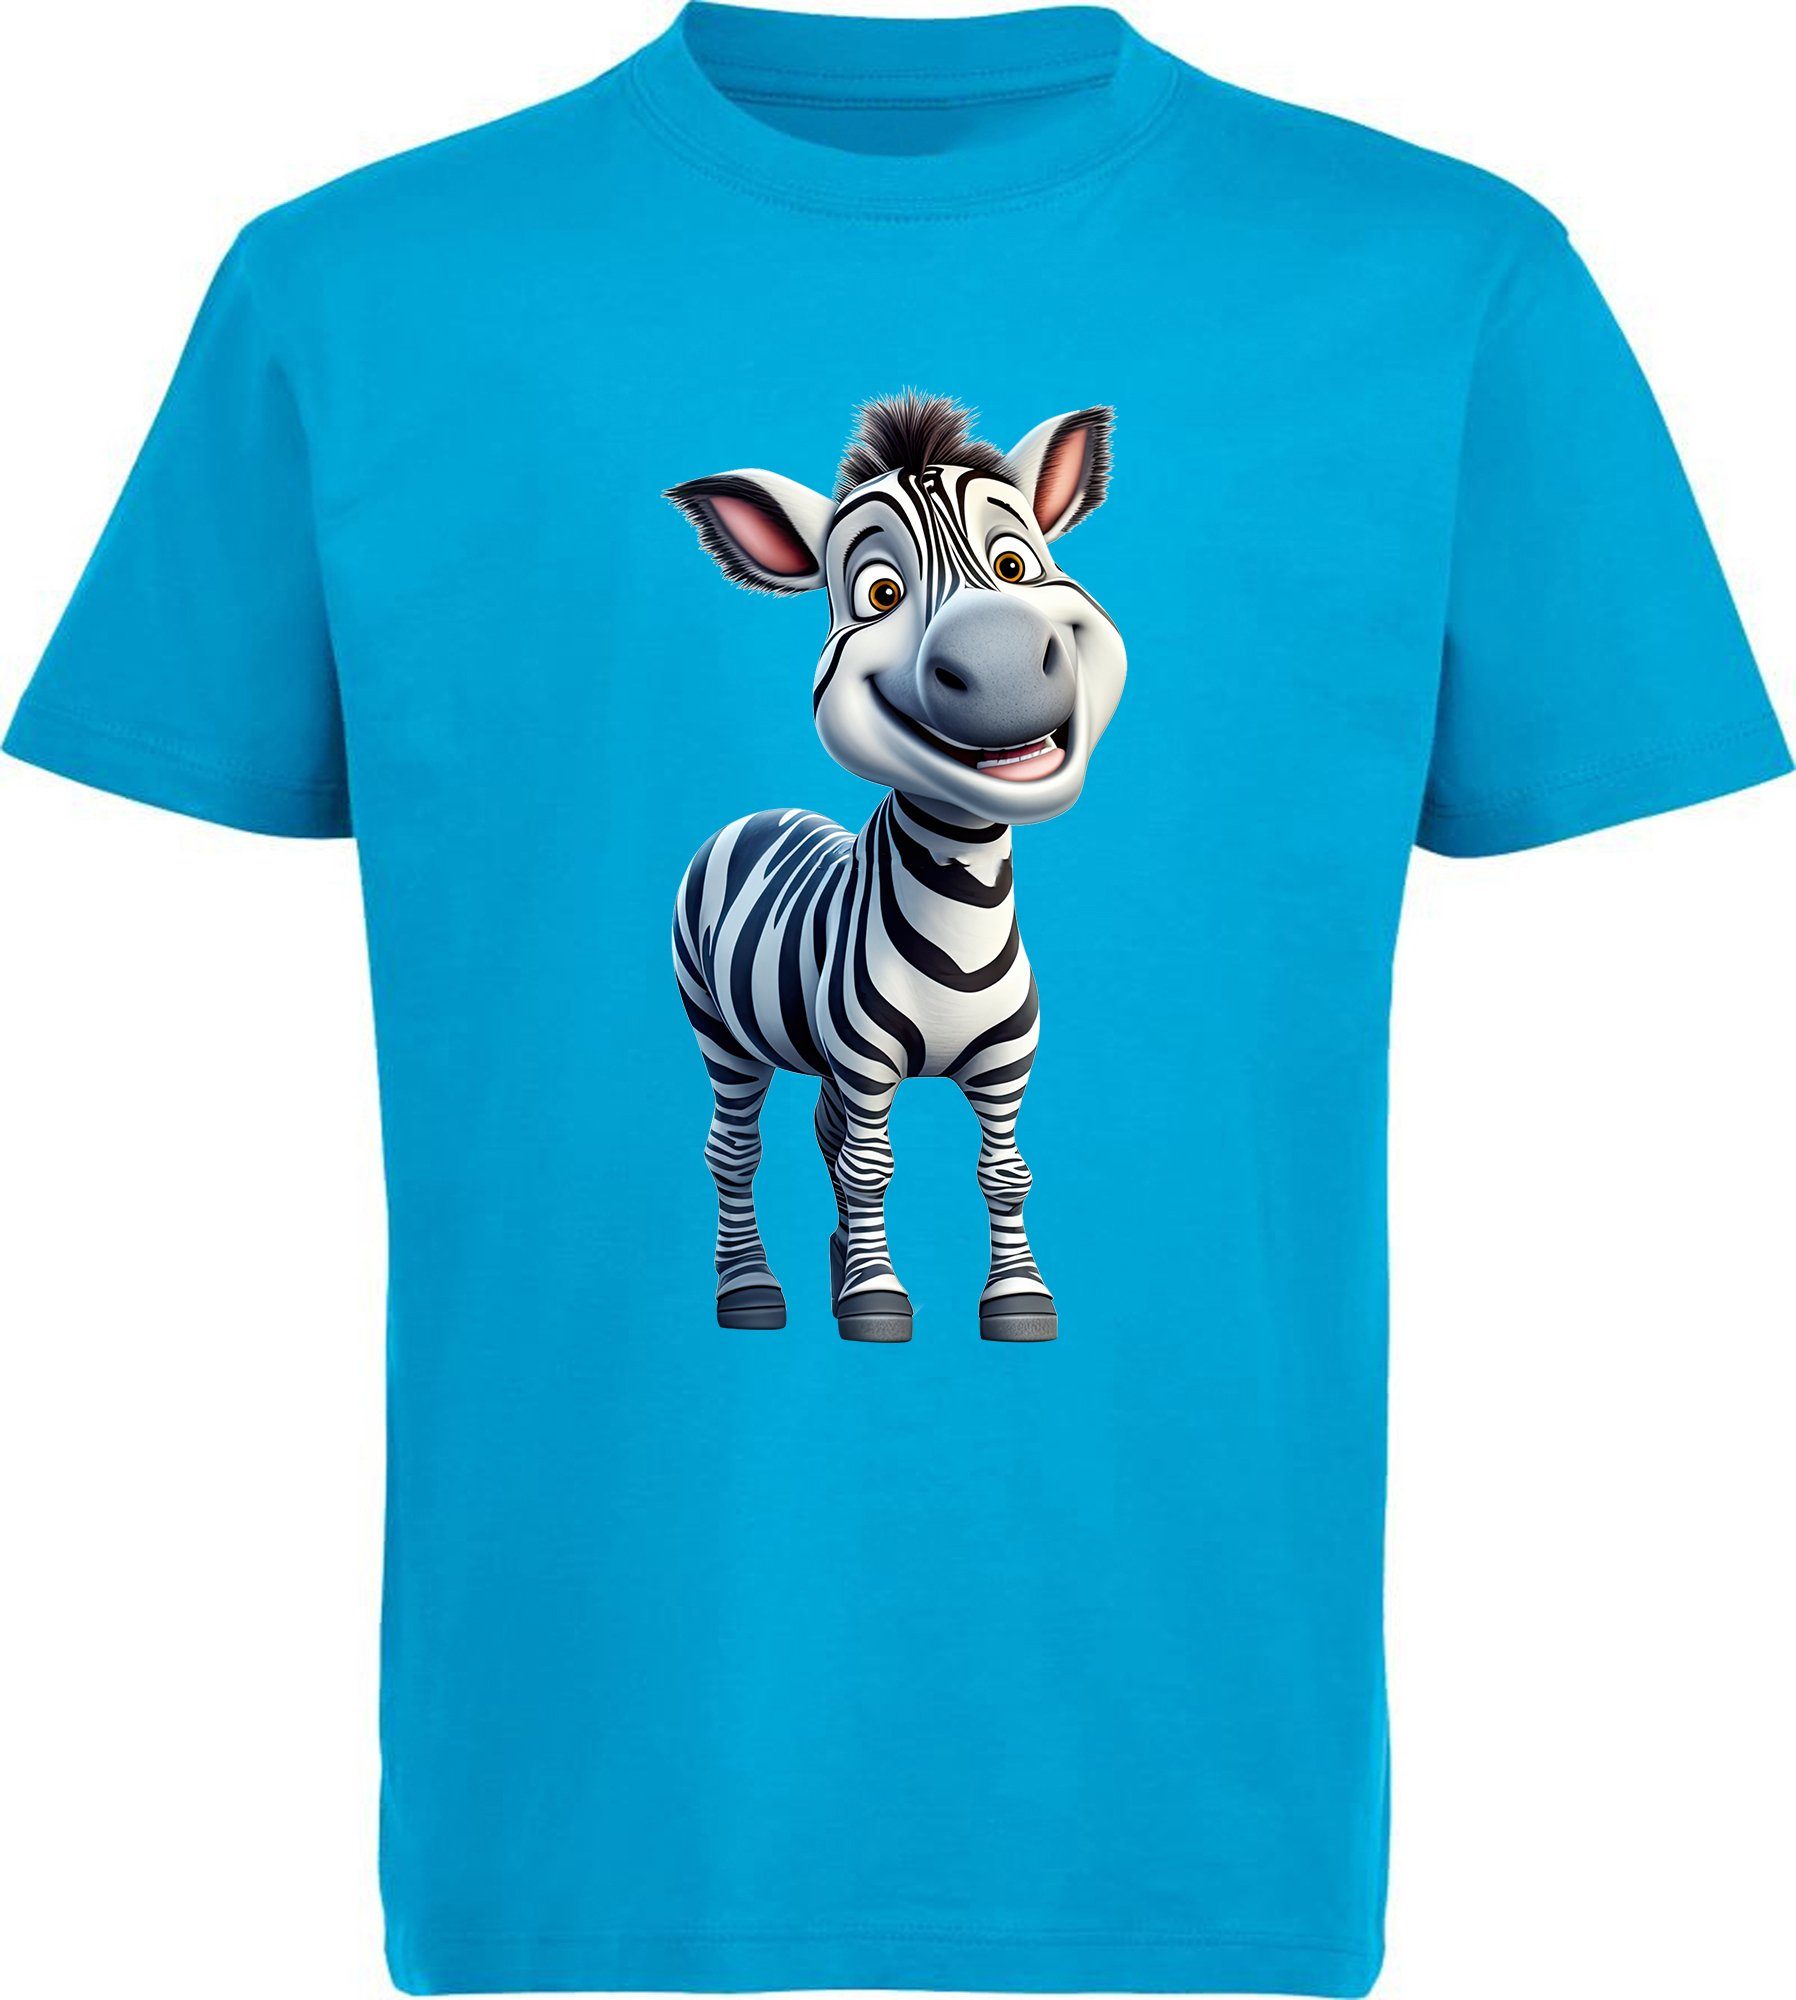 MyDesign24 T-Shirt Kinder Wildtier Baumwollshirt Print mit aqua - blau Aufdruck, Shirt bedruckt i280 Zebra Baby